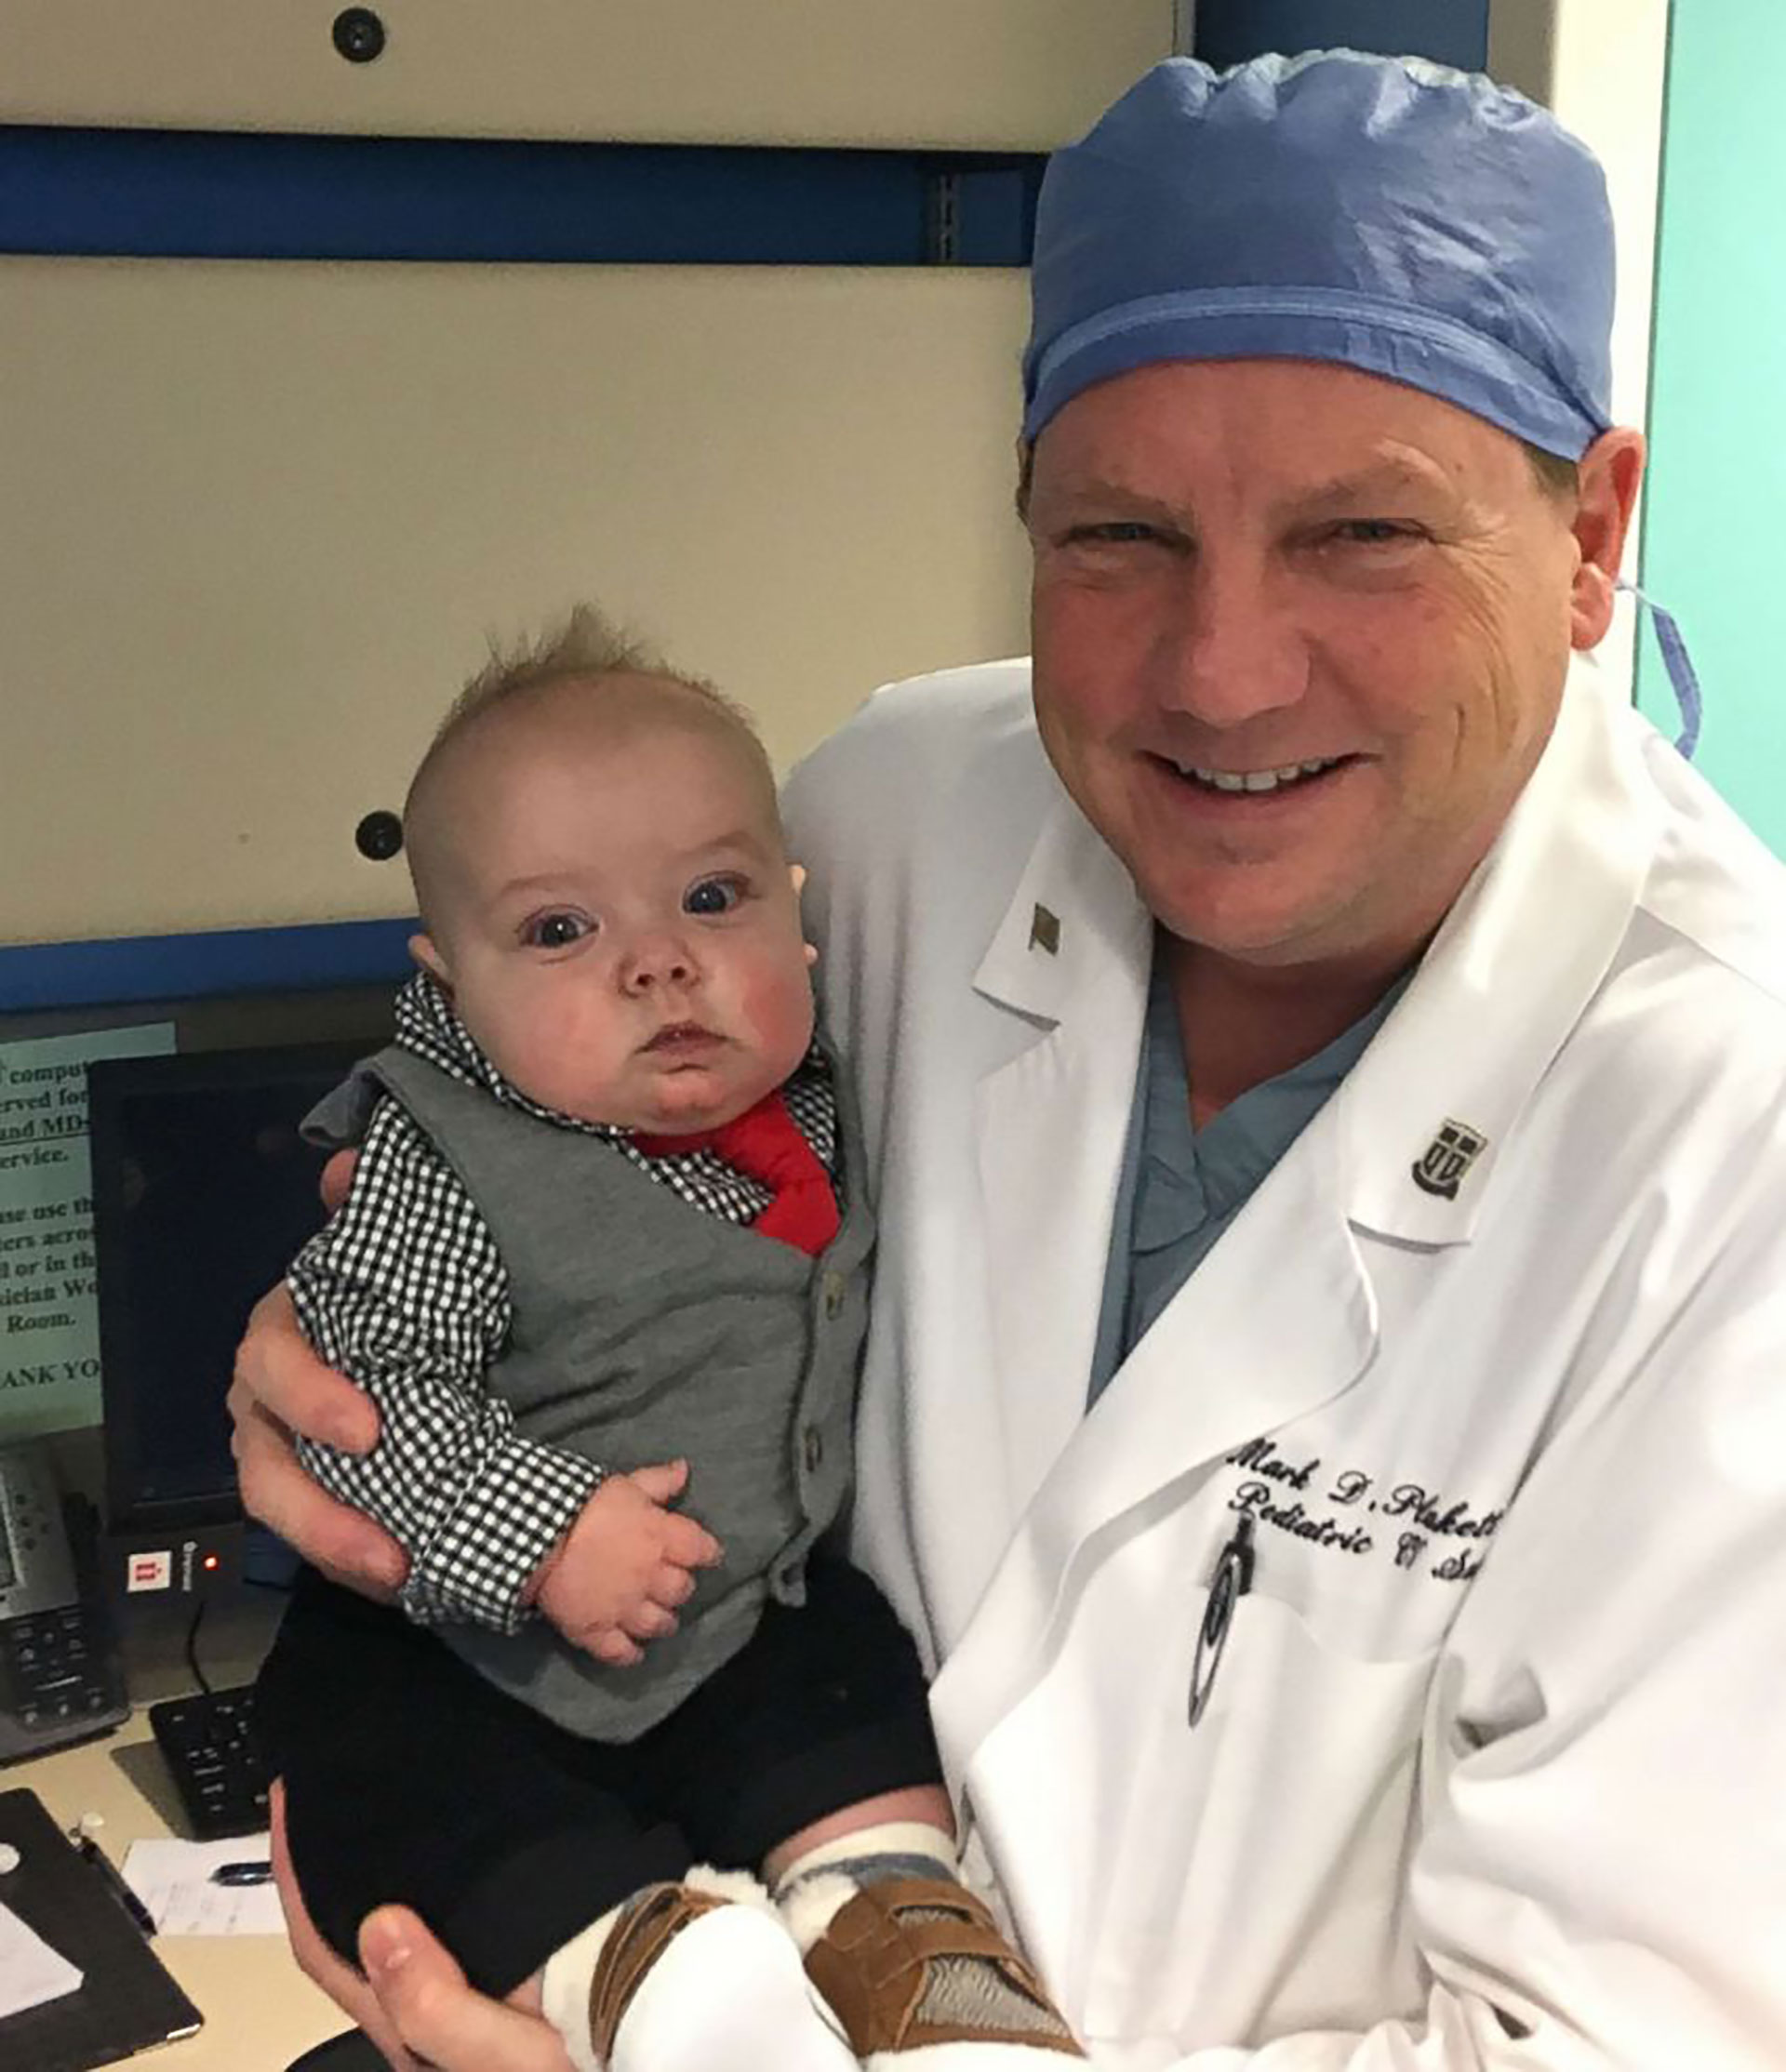 Blaze junto al Dr. Mark Plunkett quien le realizó una cirugía cardíaca en el OSF Children’s Hospital de Illinois.